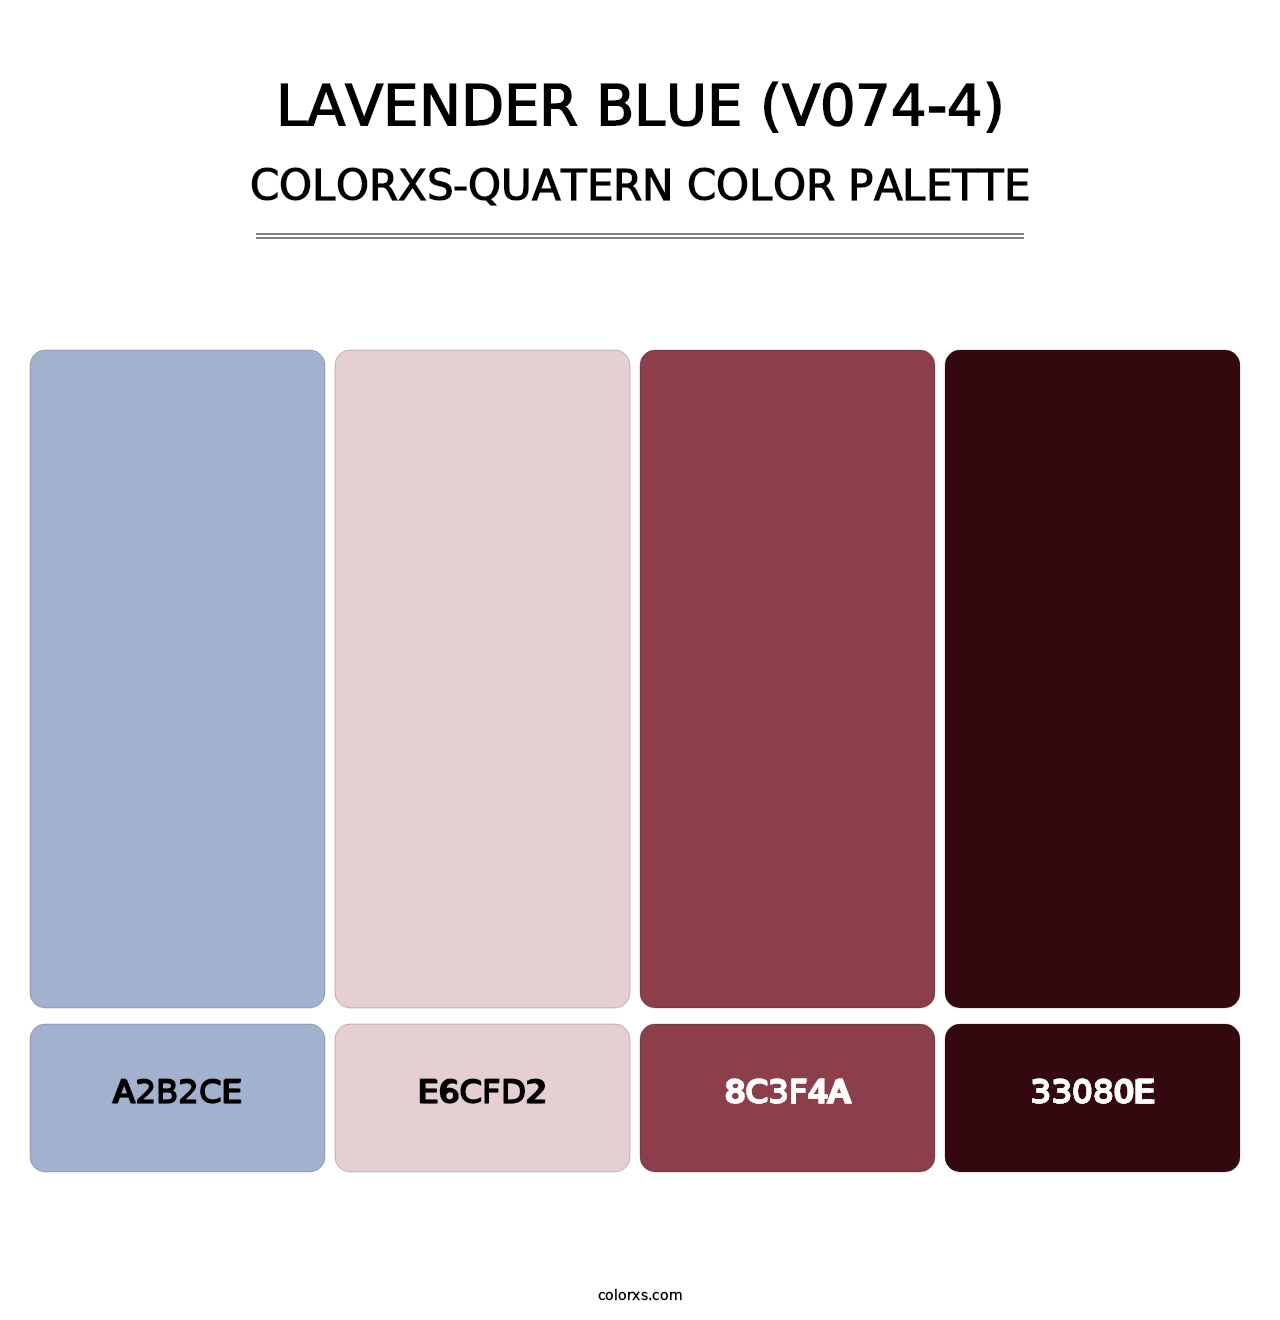 Lavender Blue (V074-4) - Colorxs Quatern Palette